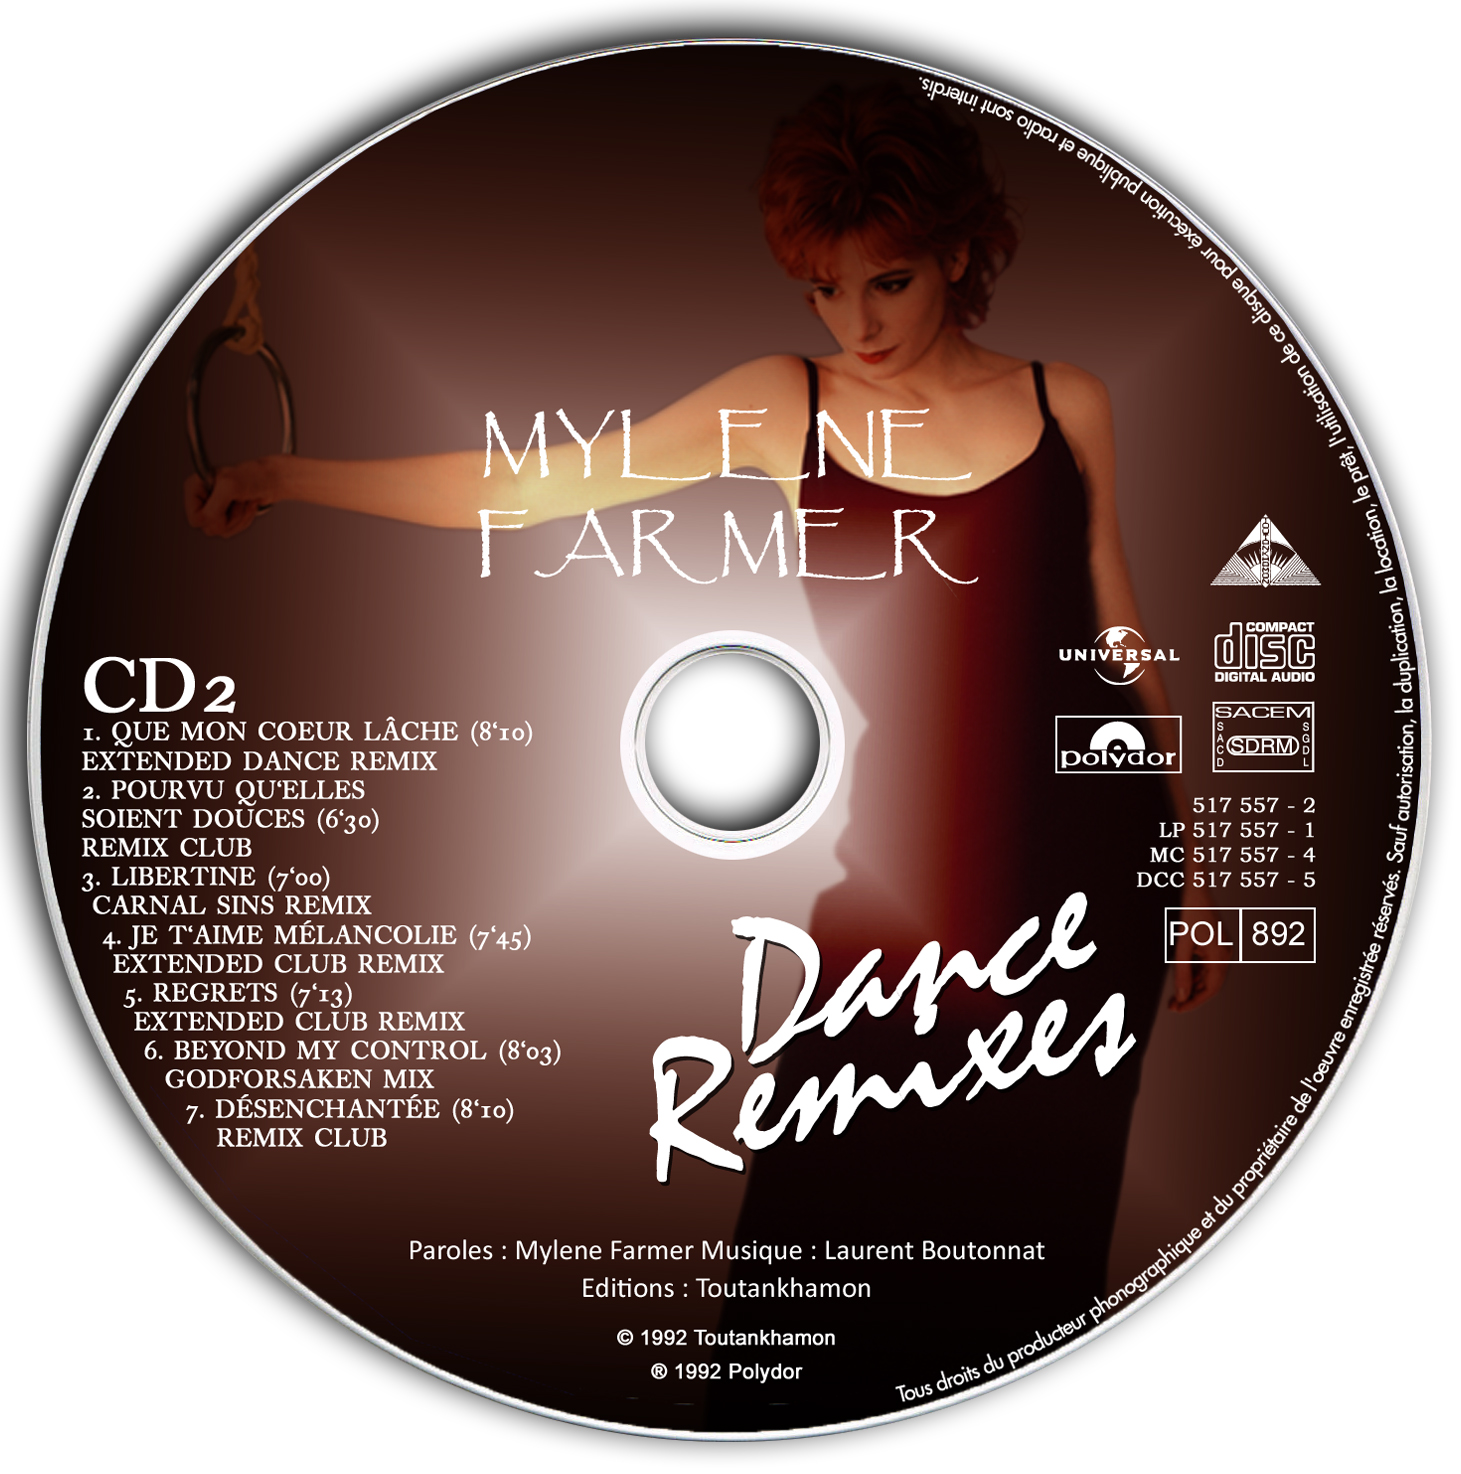 90 песни ремикс танцевальные. Farmer Mylene "Dance Remixes". Mylene Farmer Dance Remixes 1992. Mylene Farmer Dance Remixes 1992 обложка.